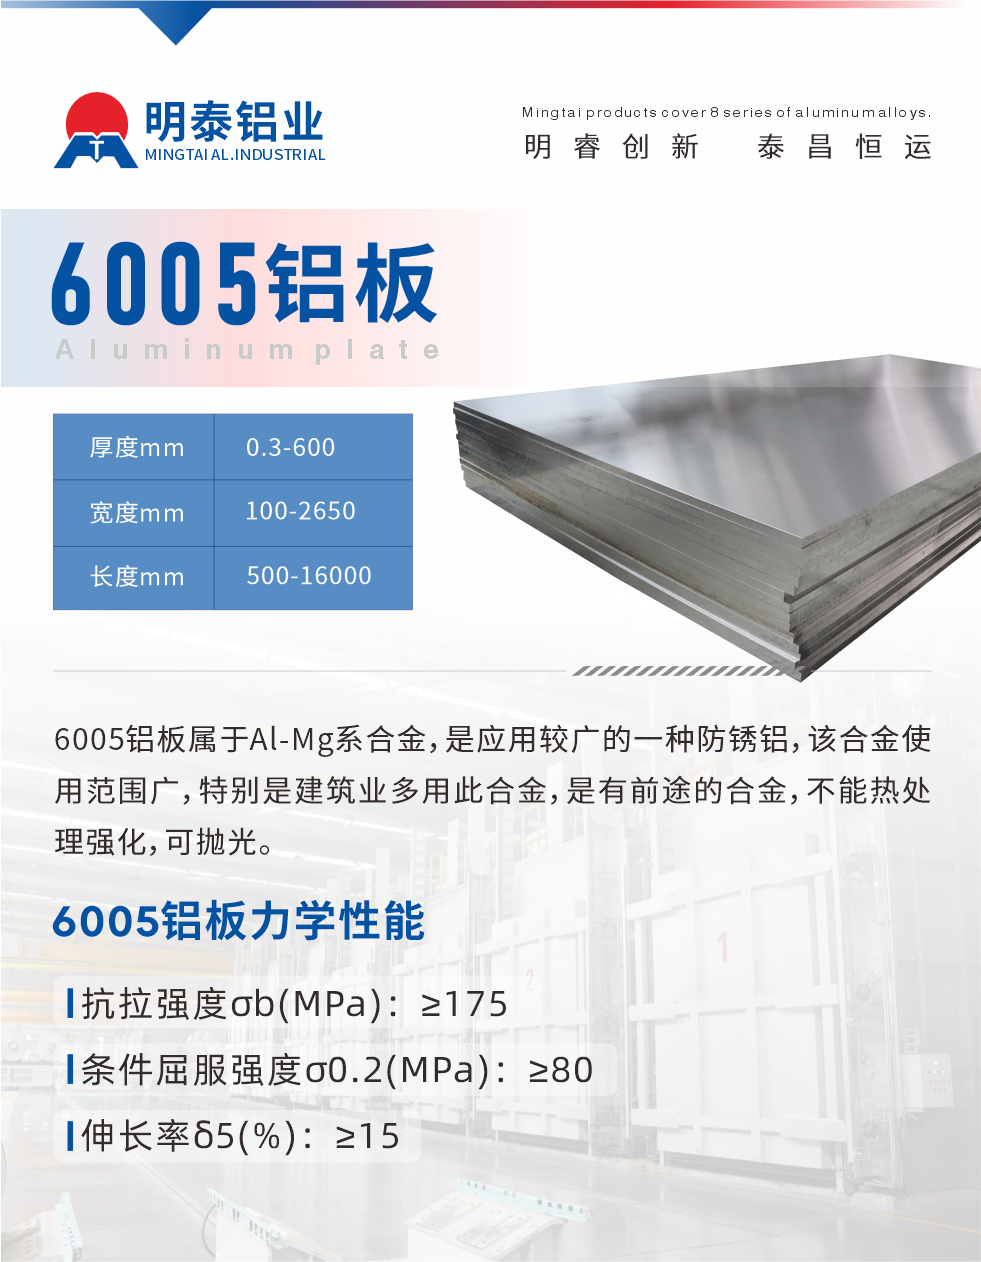 6005产品介绍:
6005铝板属于Al-Mg系合金，是应用较广的一种防锈铝，该合金使用范围广，特别是建筑业多用此合金，是有前途的合金，不能热处理强化，可抛光。
